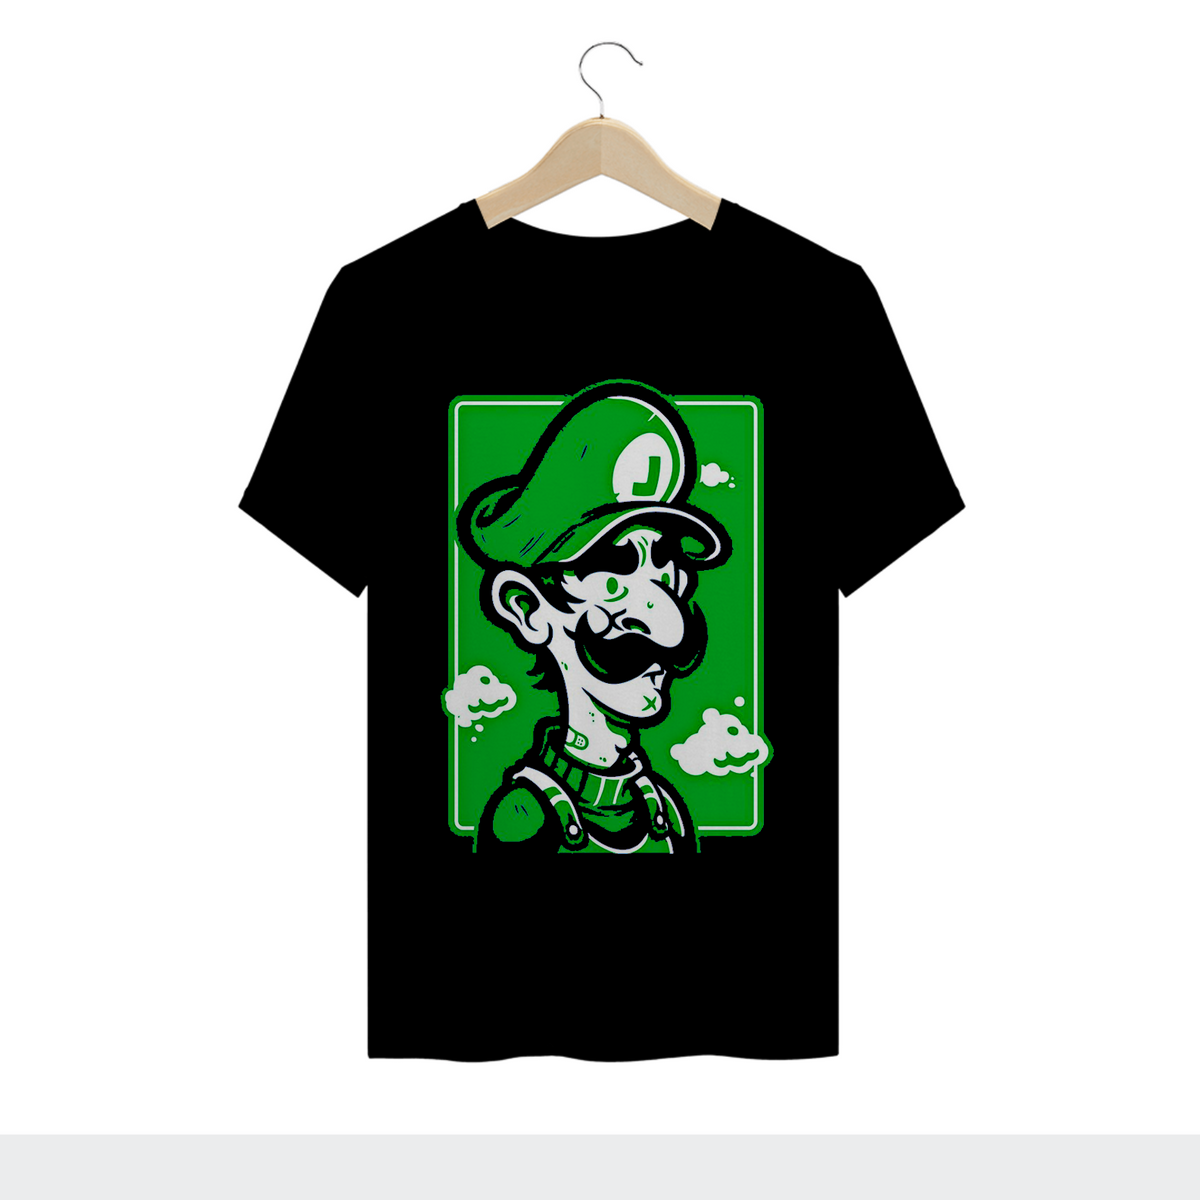 Nome do produto: Luigi